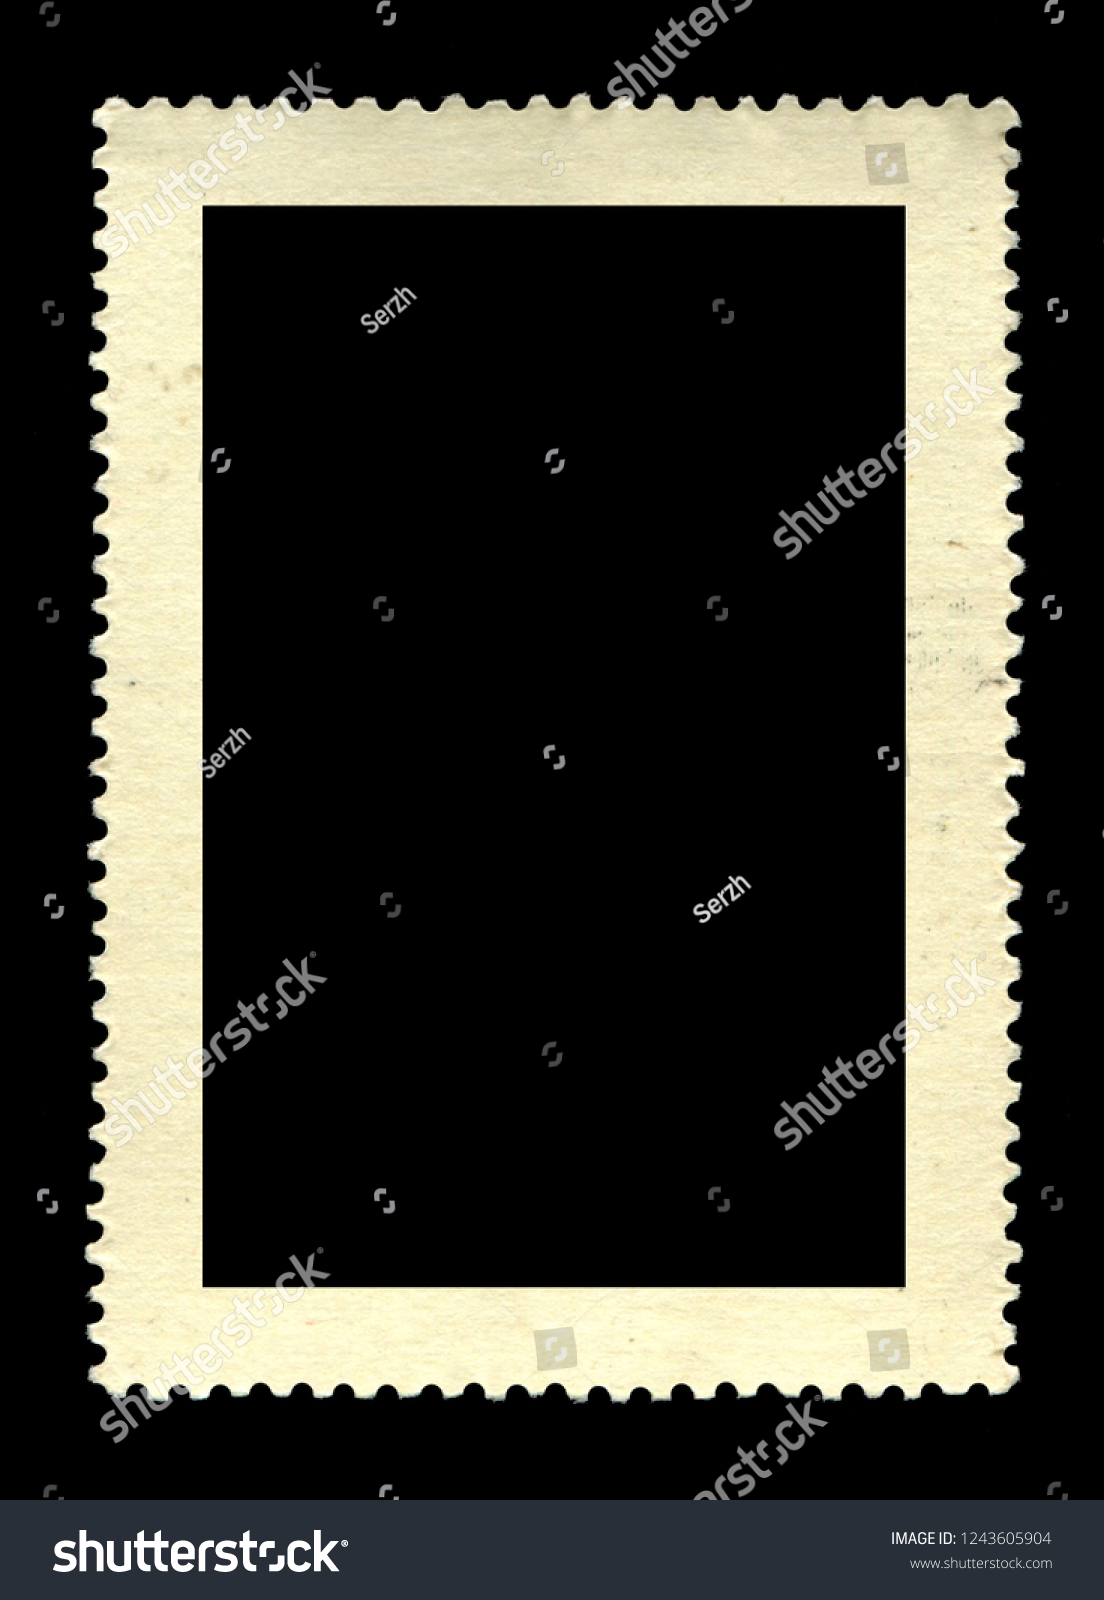 Vintage postage stamp on a black background #1243605904